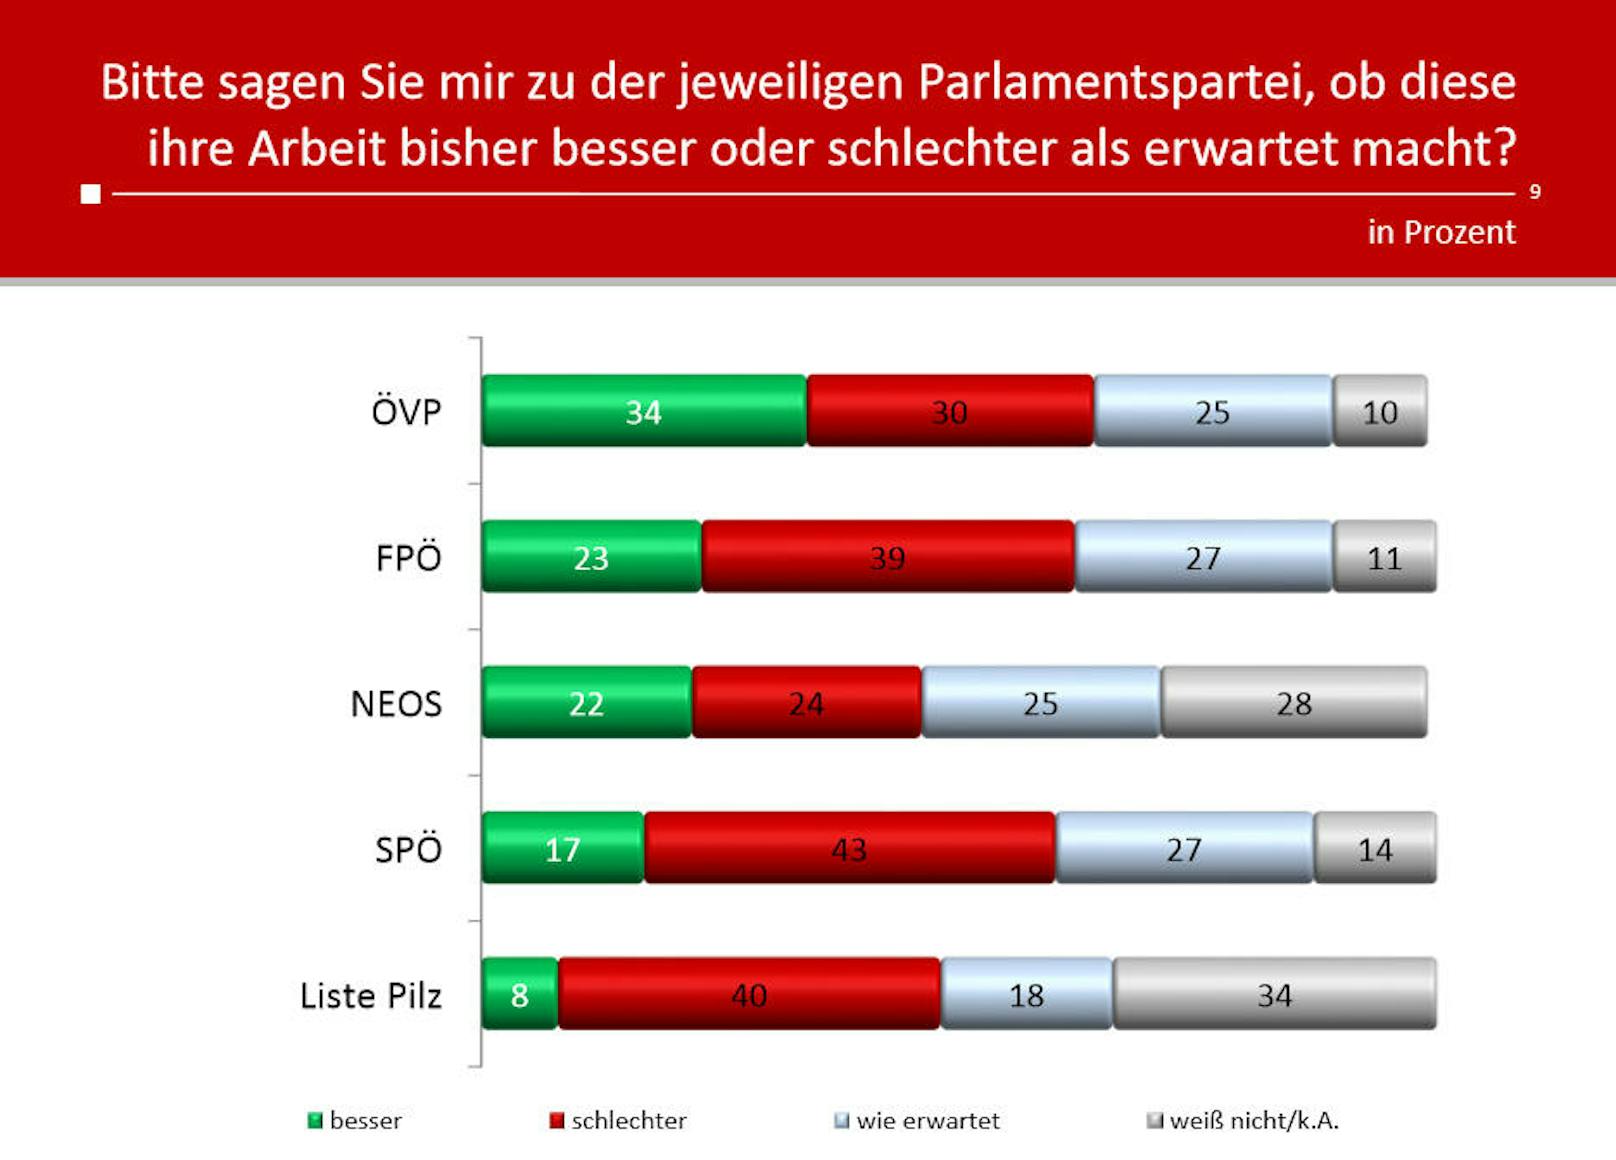 Die Arbeit der ÖVP wird insgesamt am positivsten gesehen, am wenigsten konnte bislang die Liste Pilz überzeugen.